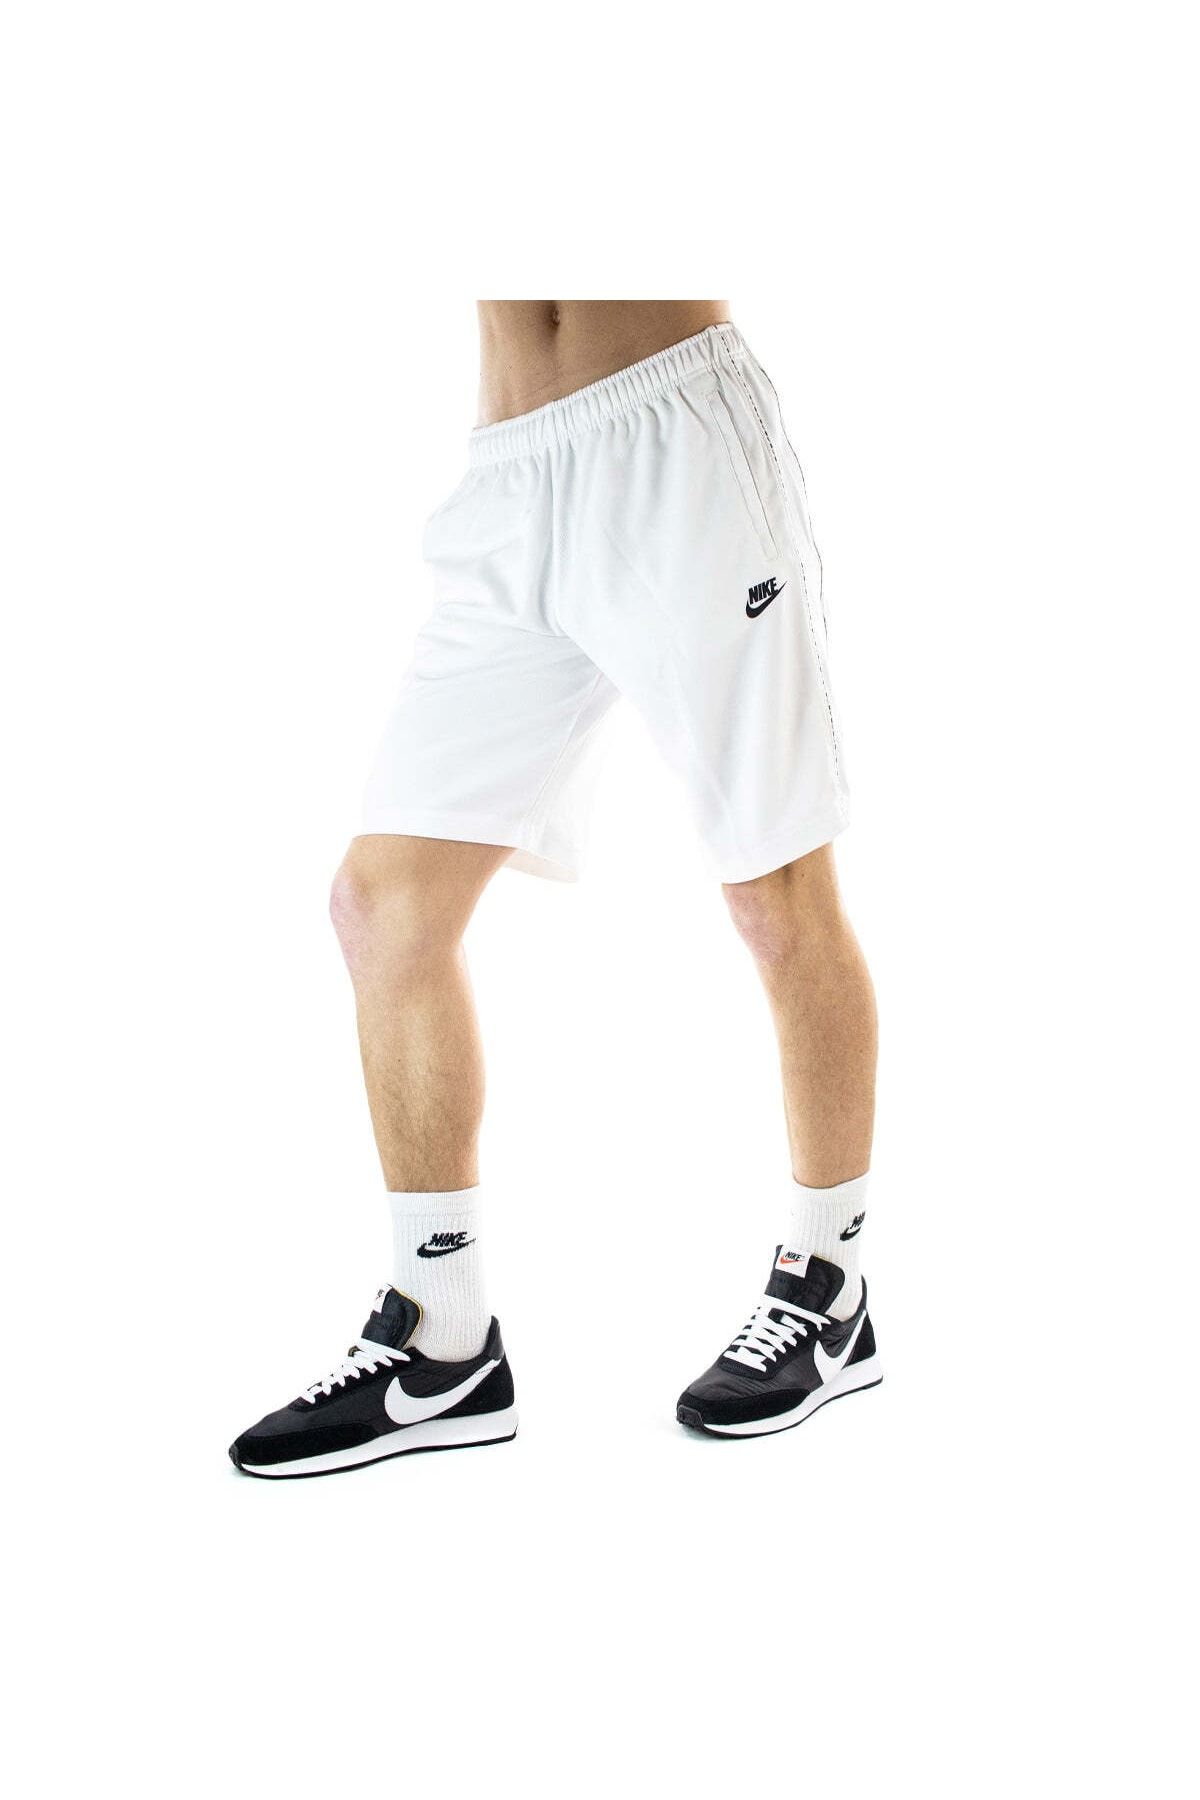 Nike Erkek-kadın Kısa Pantolon-şort